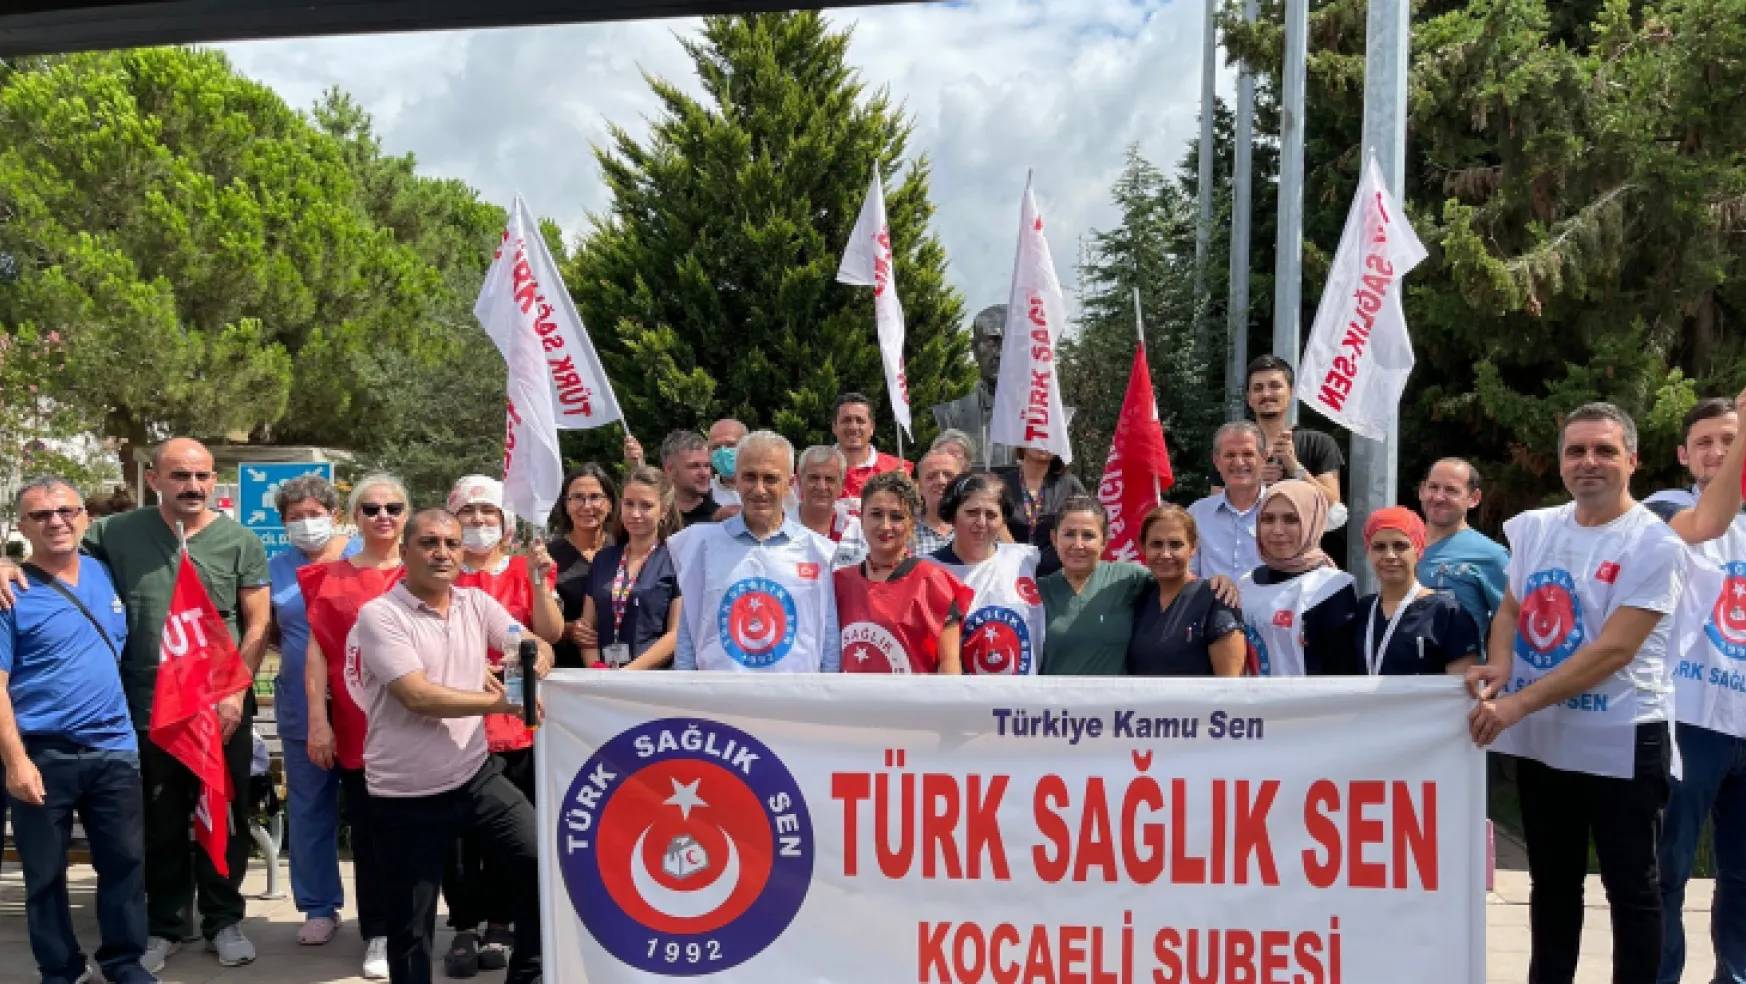 Türk Sağlık Sen: Dava açıldı, mücadeleye devam